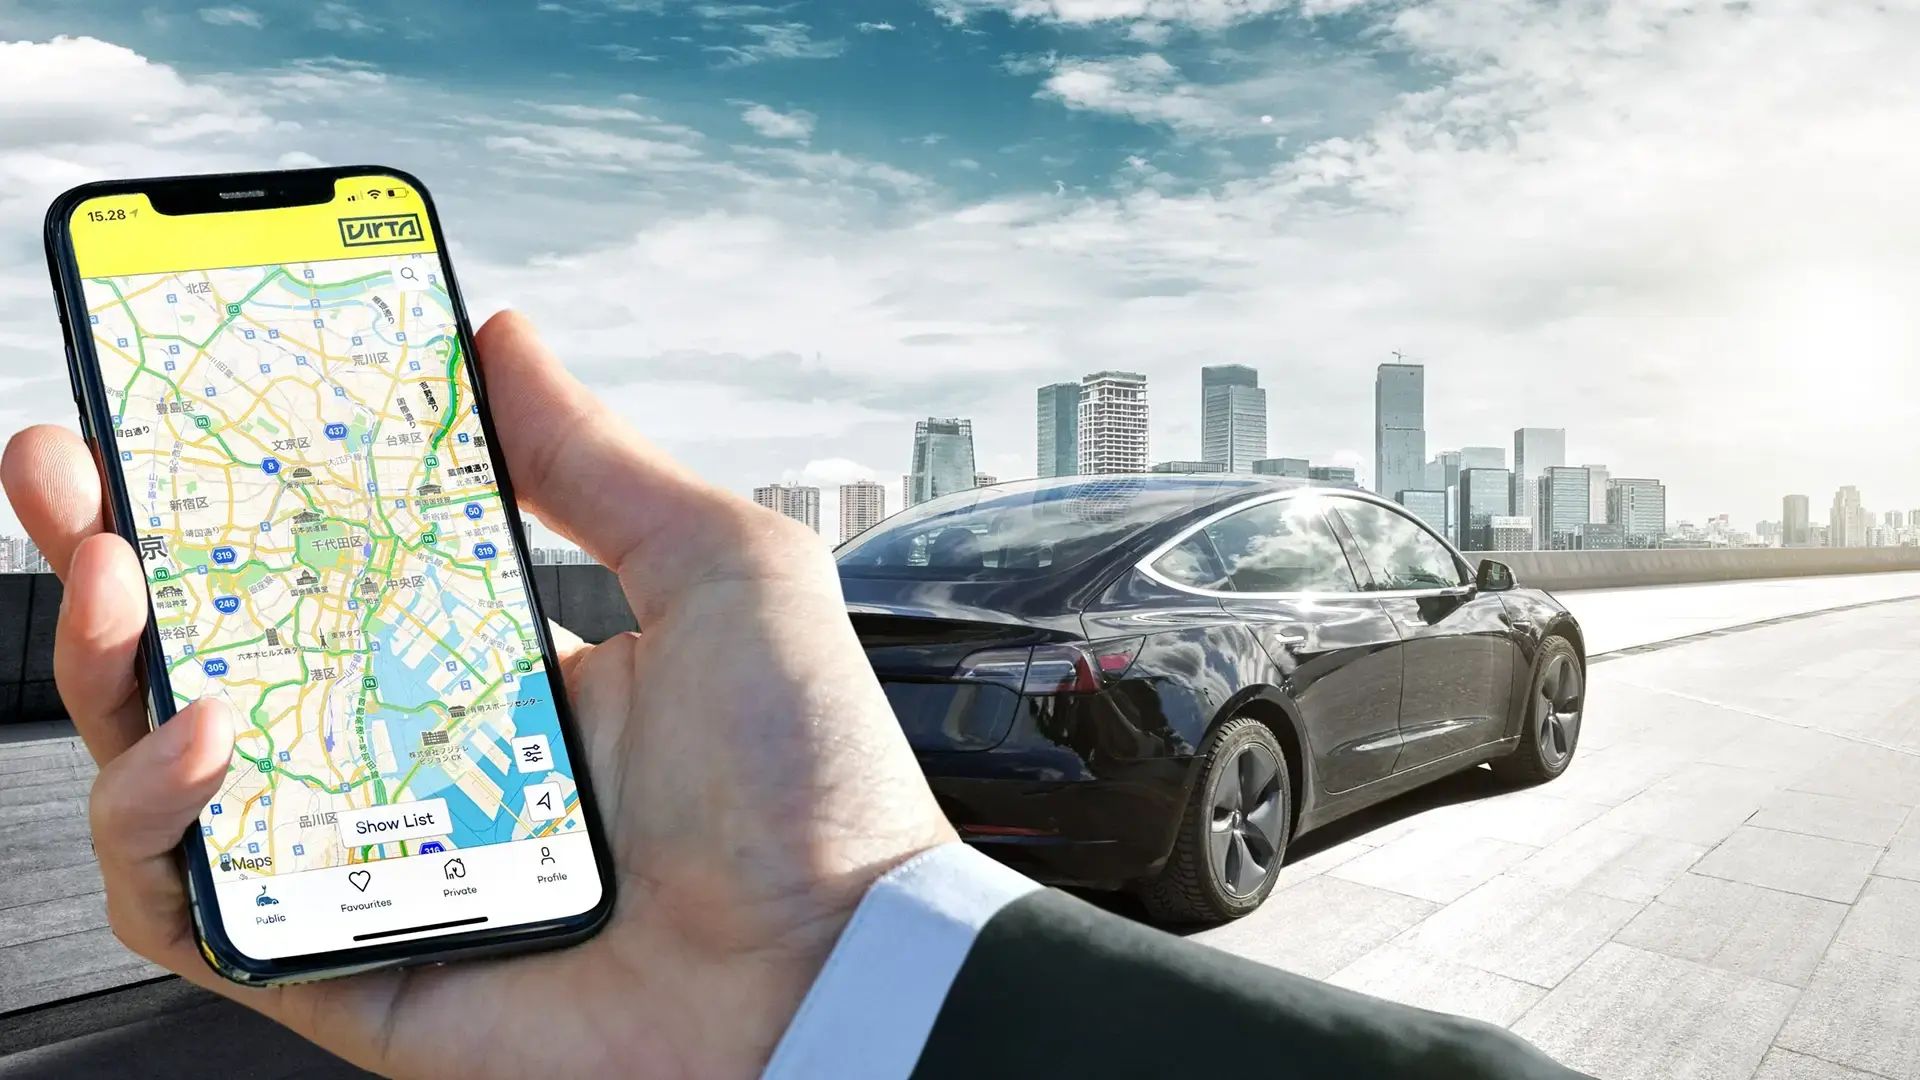 virta-app-in-front-of-black-car-big-city-landscape